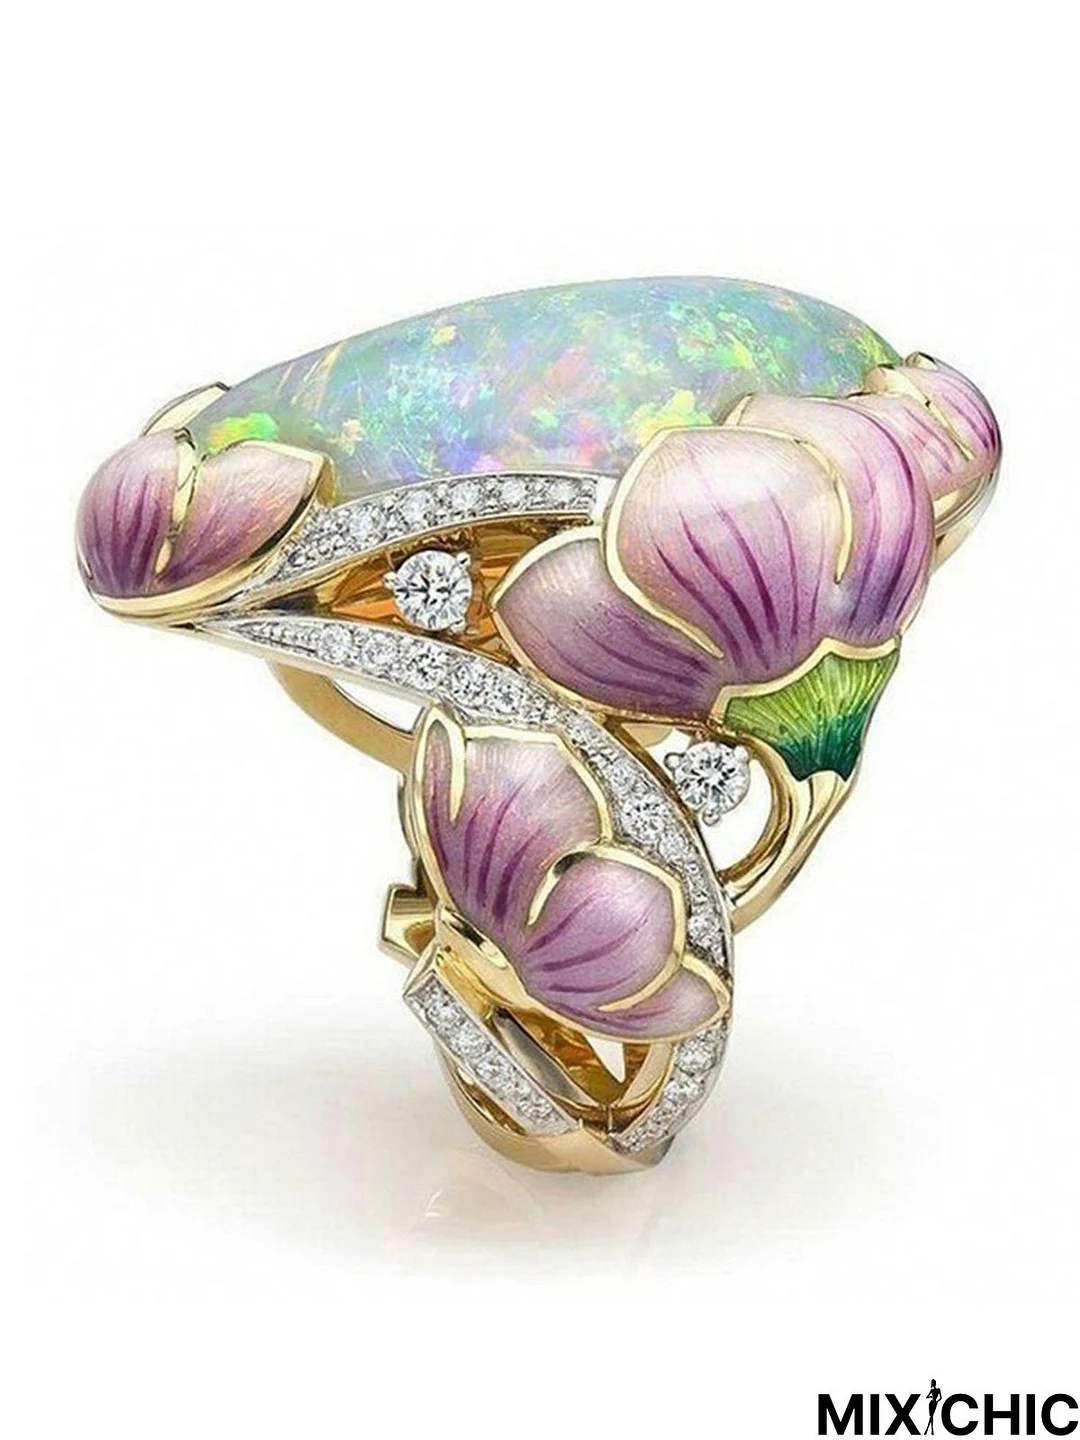 Enamel Opal Painted Ring